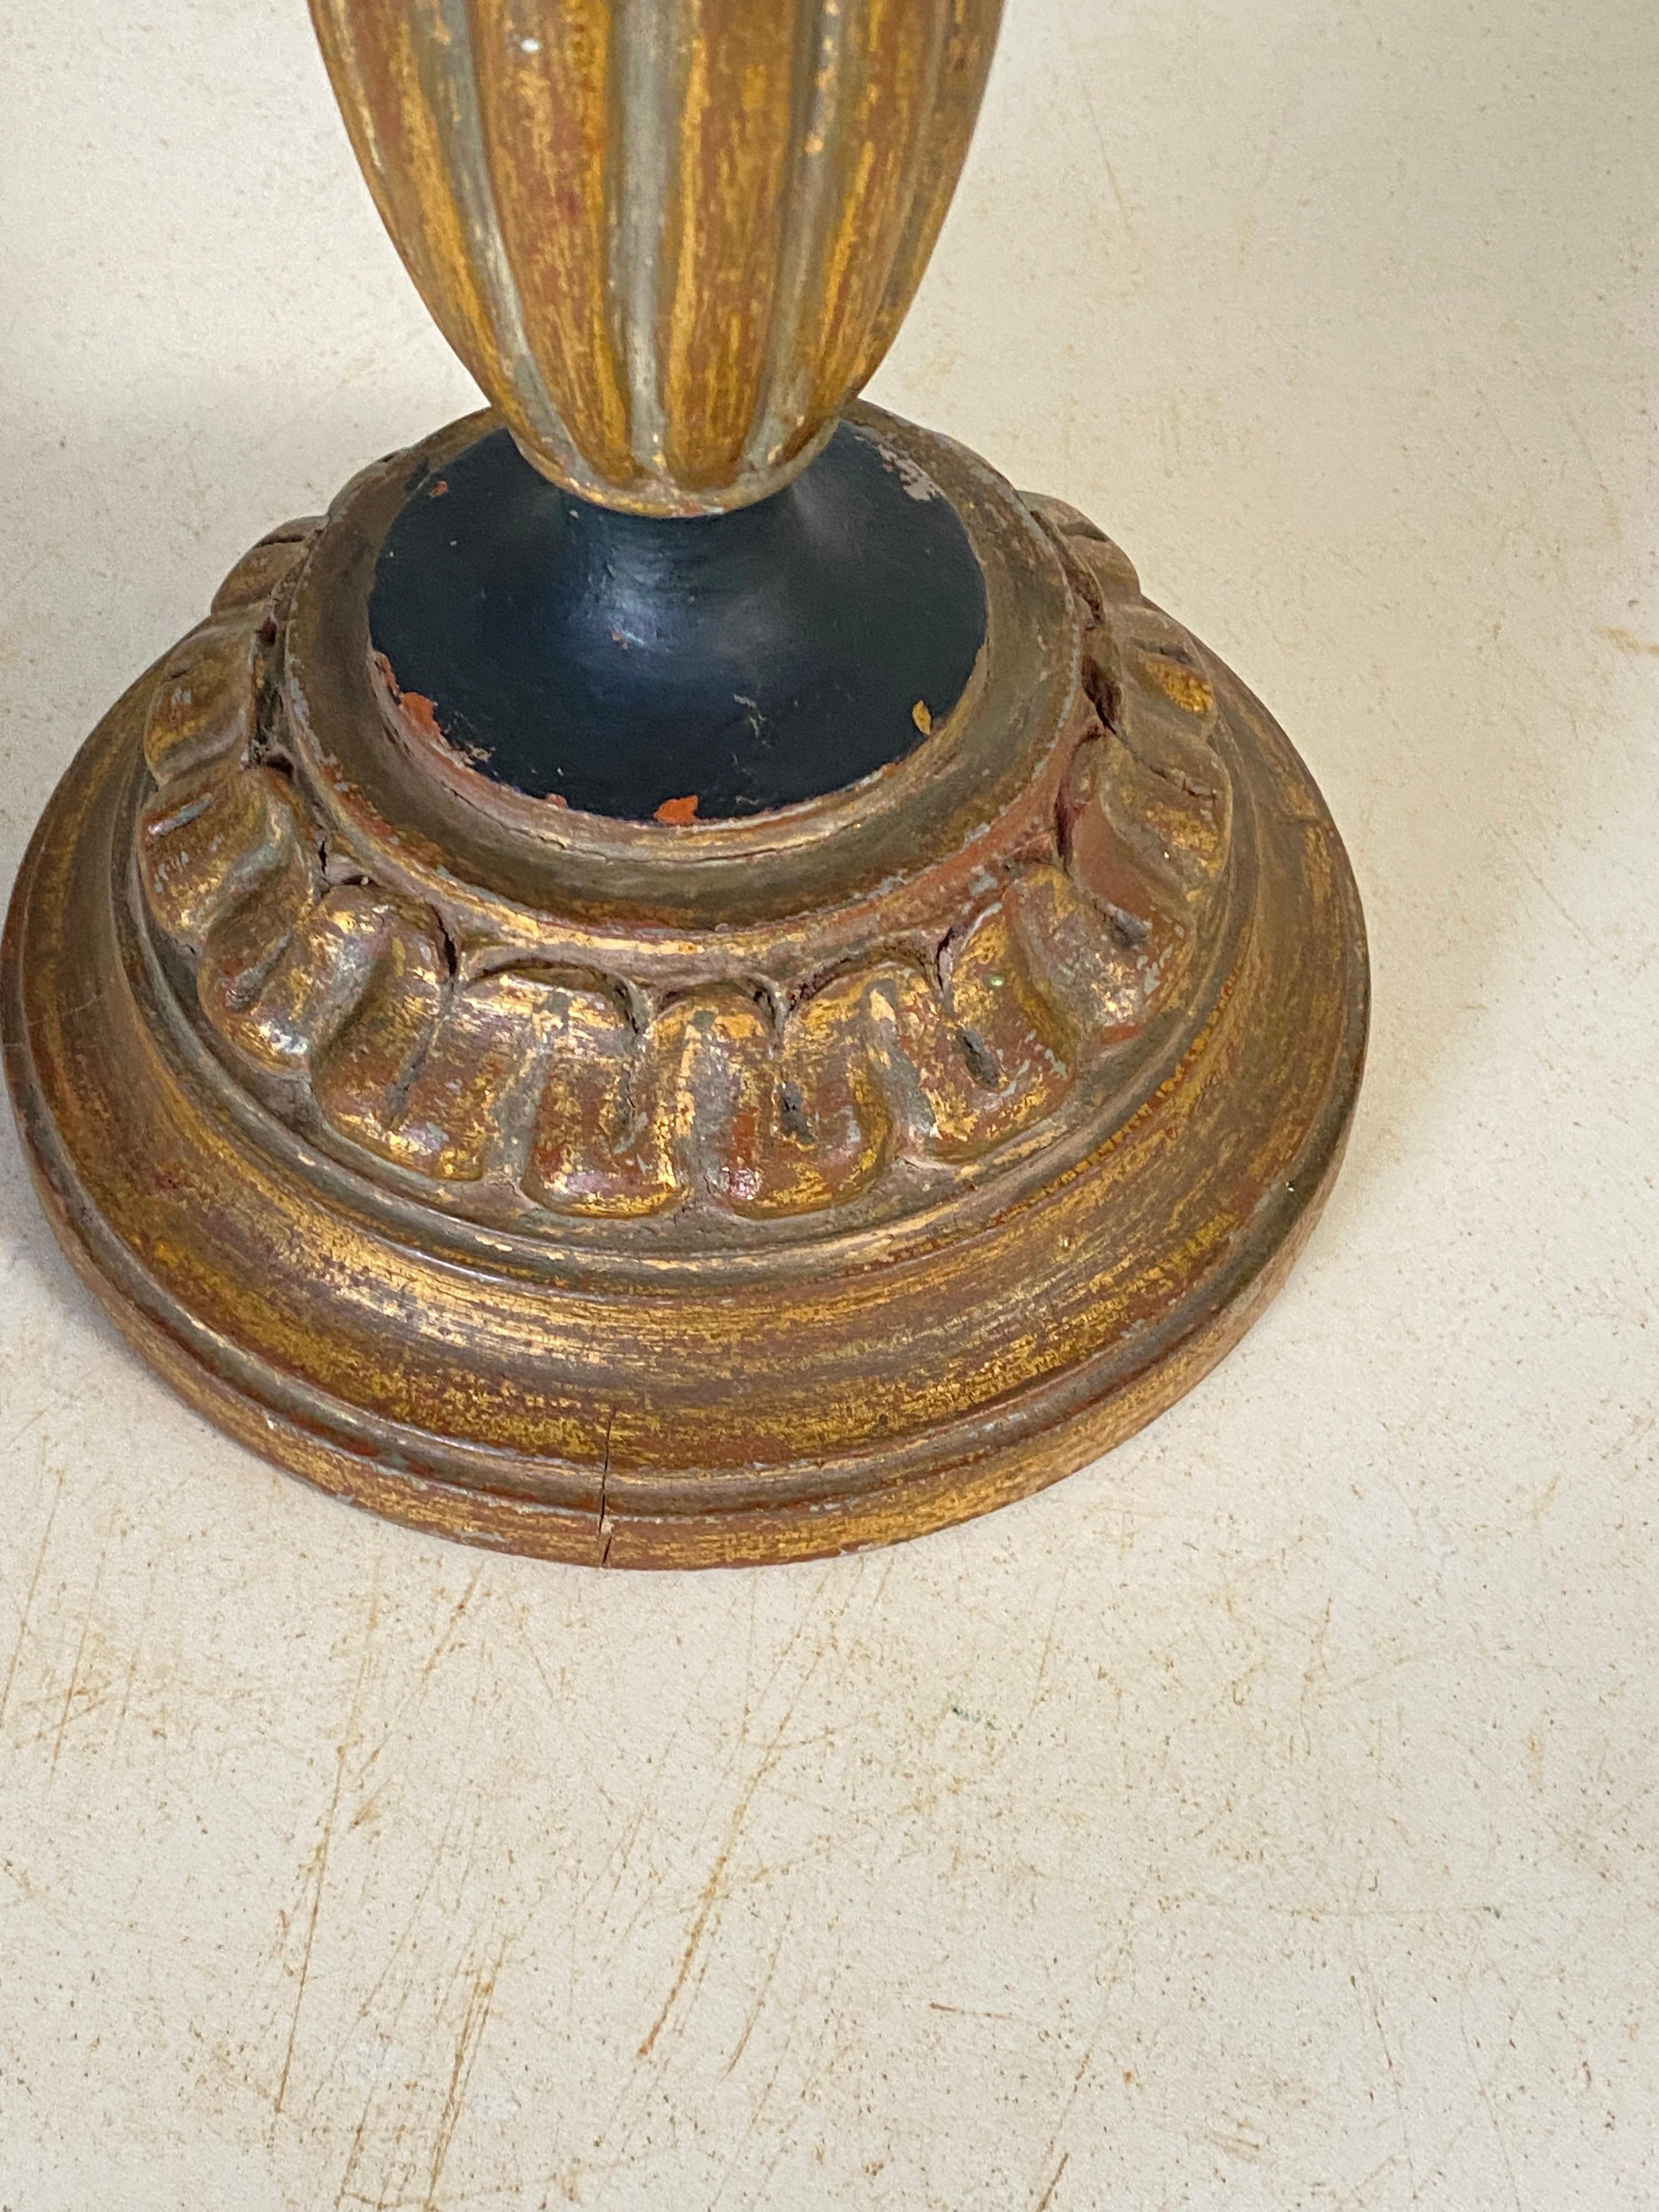 Dieser Kerzenhalter oder Candlestick  ist in Holz mit einer goldenen Farbe. Es ist schwer und in einem sehr guten Zustand. Die Patina ist wunderschön.
Es wurde in Frankreich in den 1950er Jahren hergestellt.